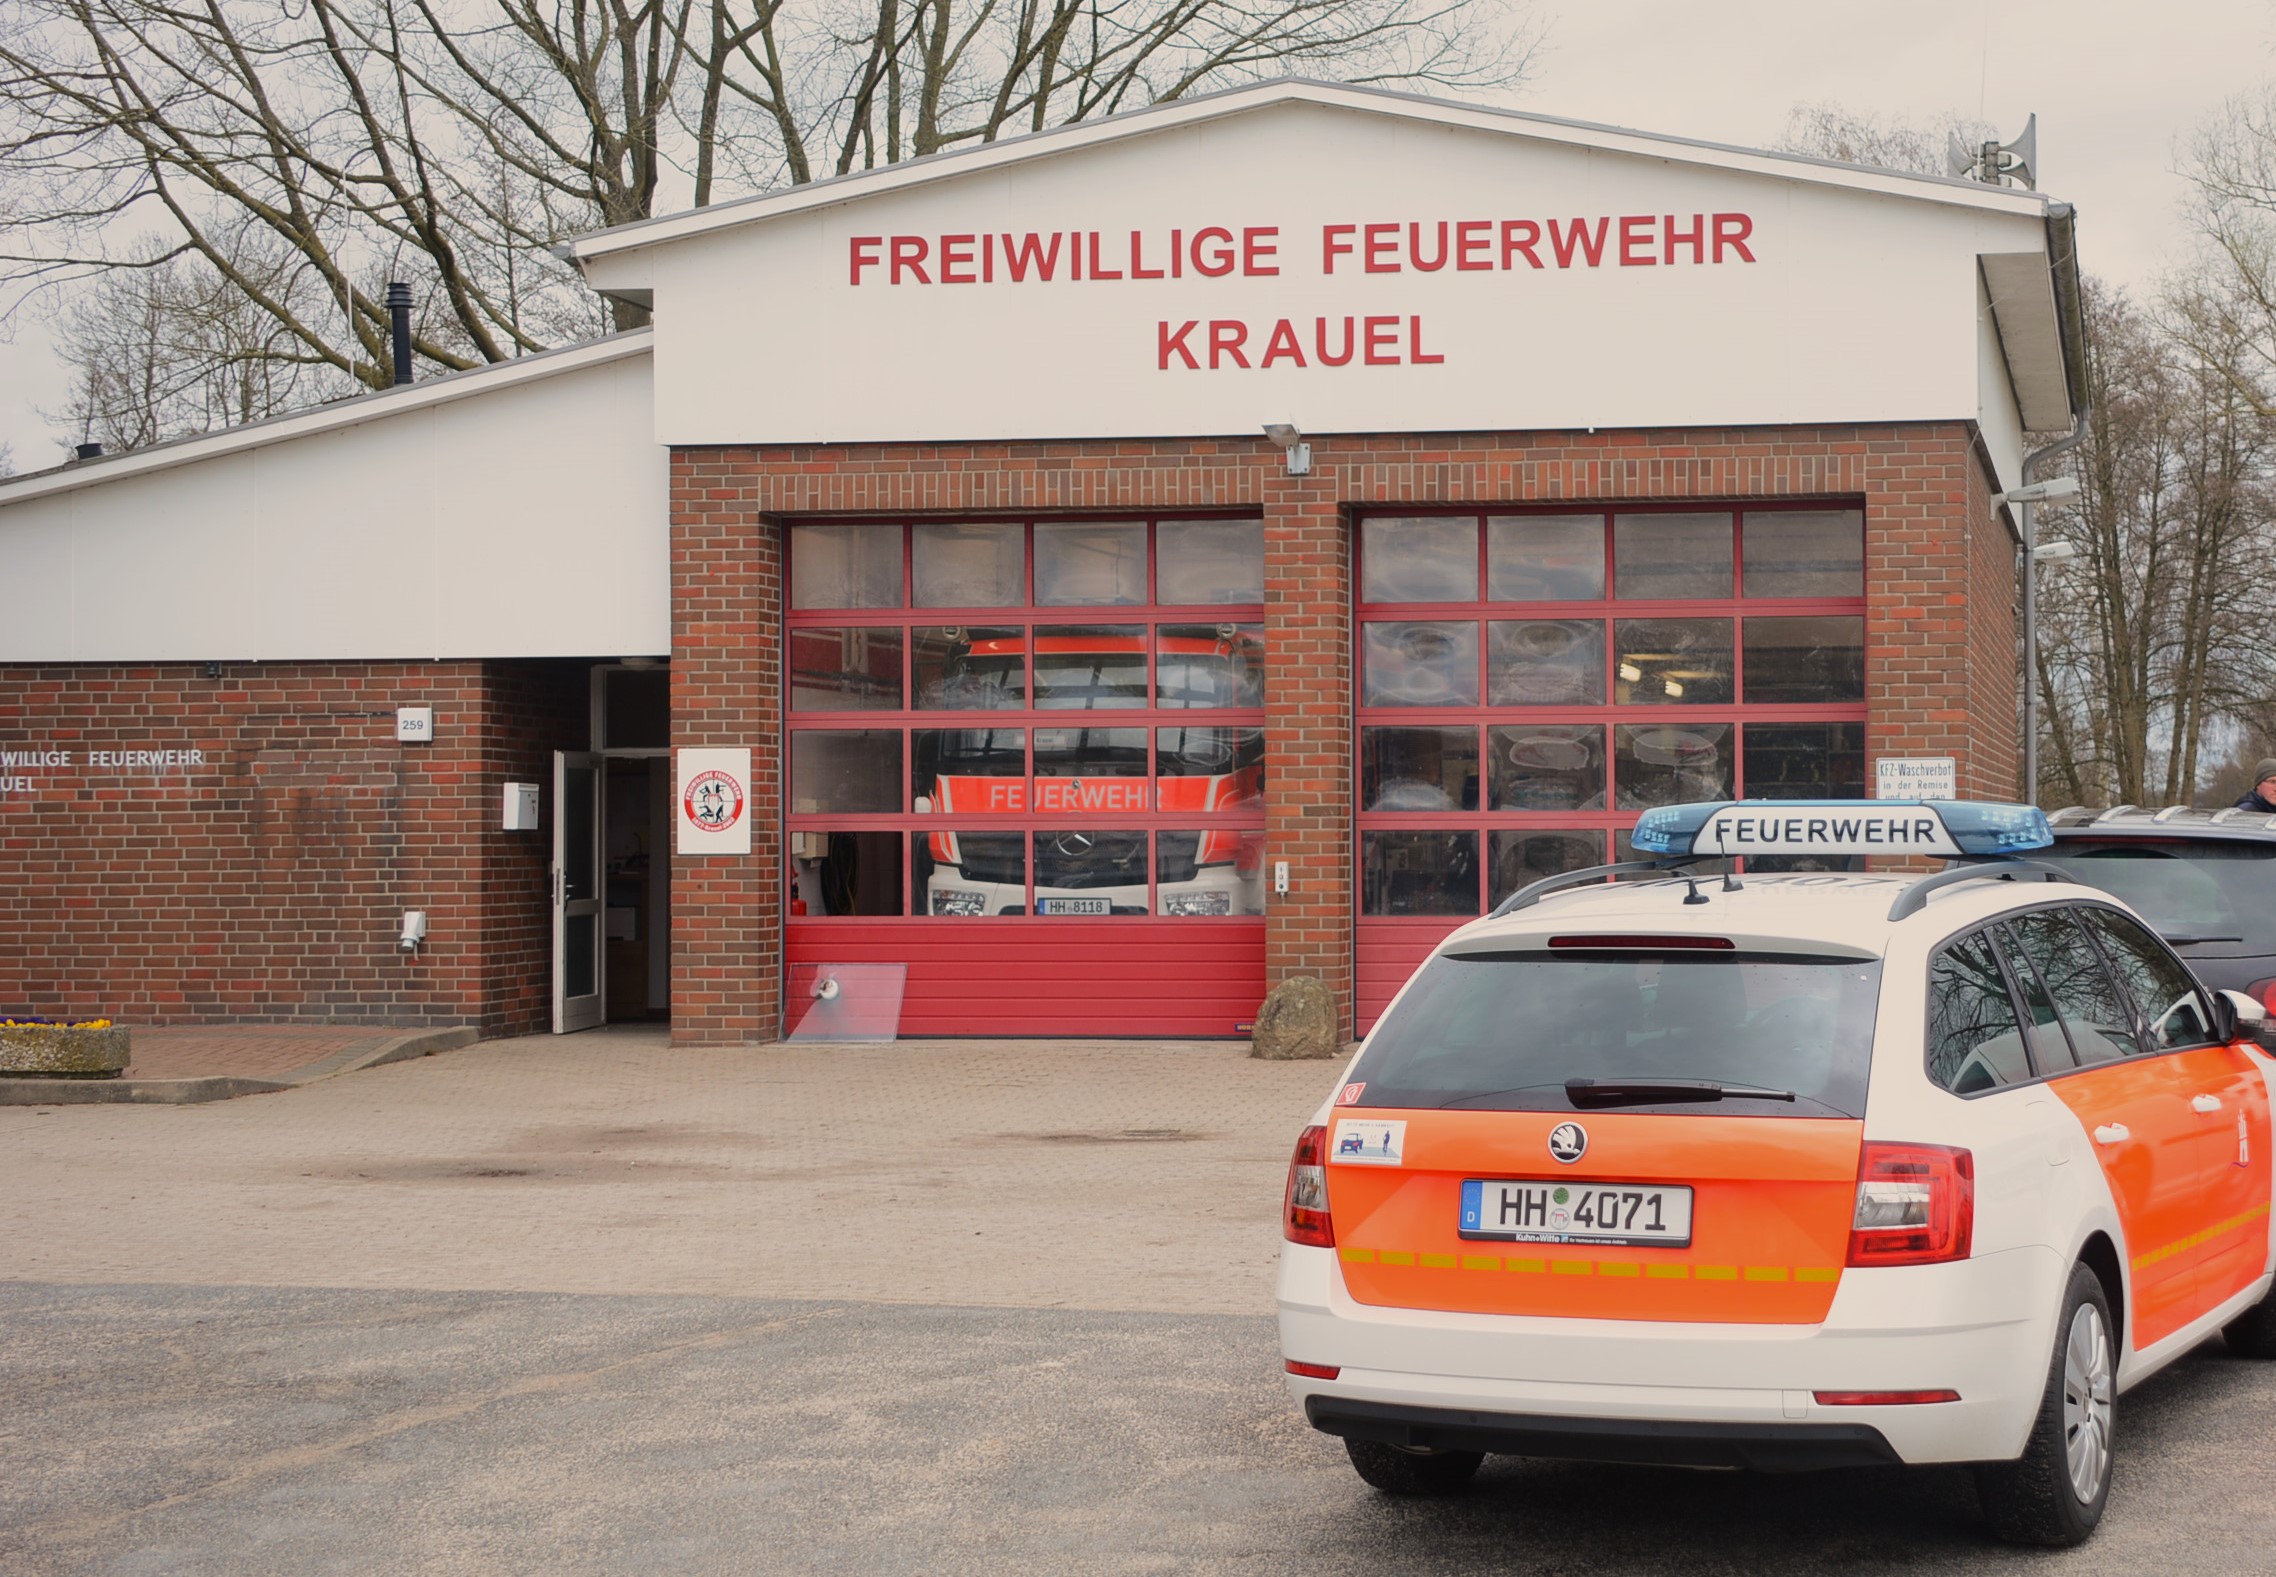 Einbruch in Hamburger Feuerwehrhaus Täter stehlen teures Gerät das auf dem schwarzmarkt Absatz findet.